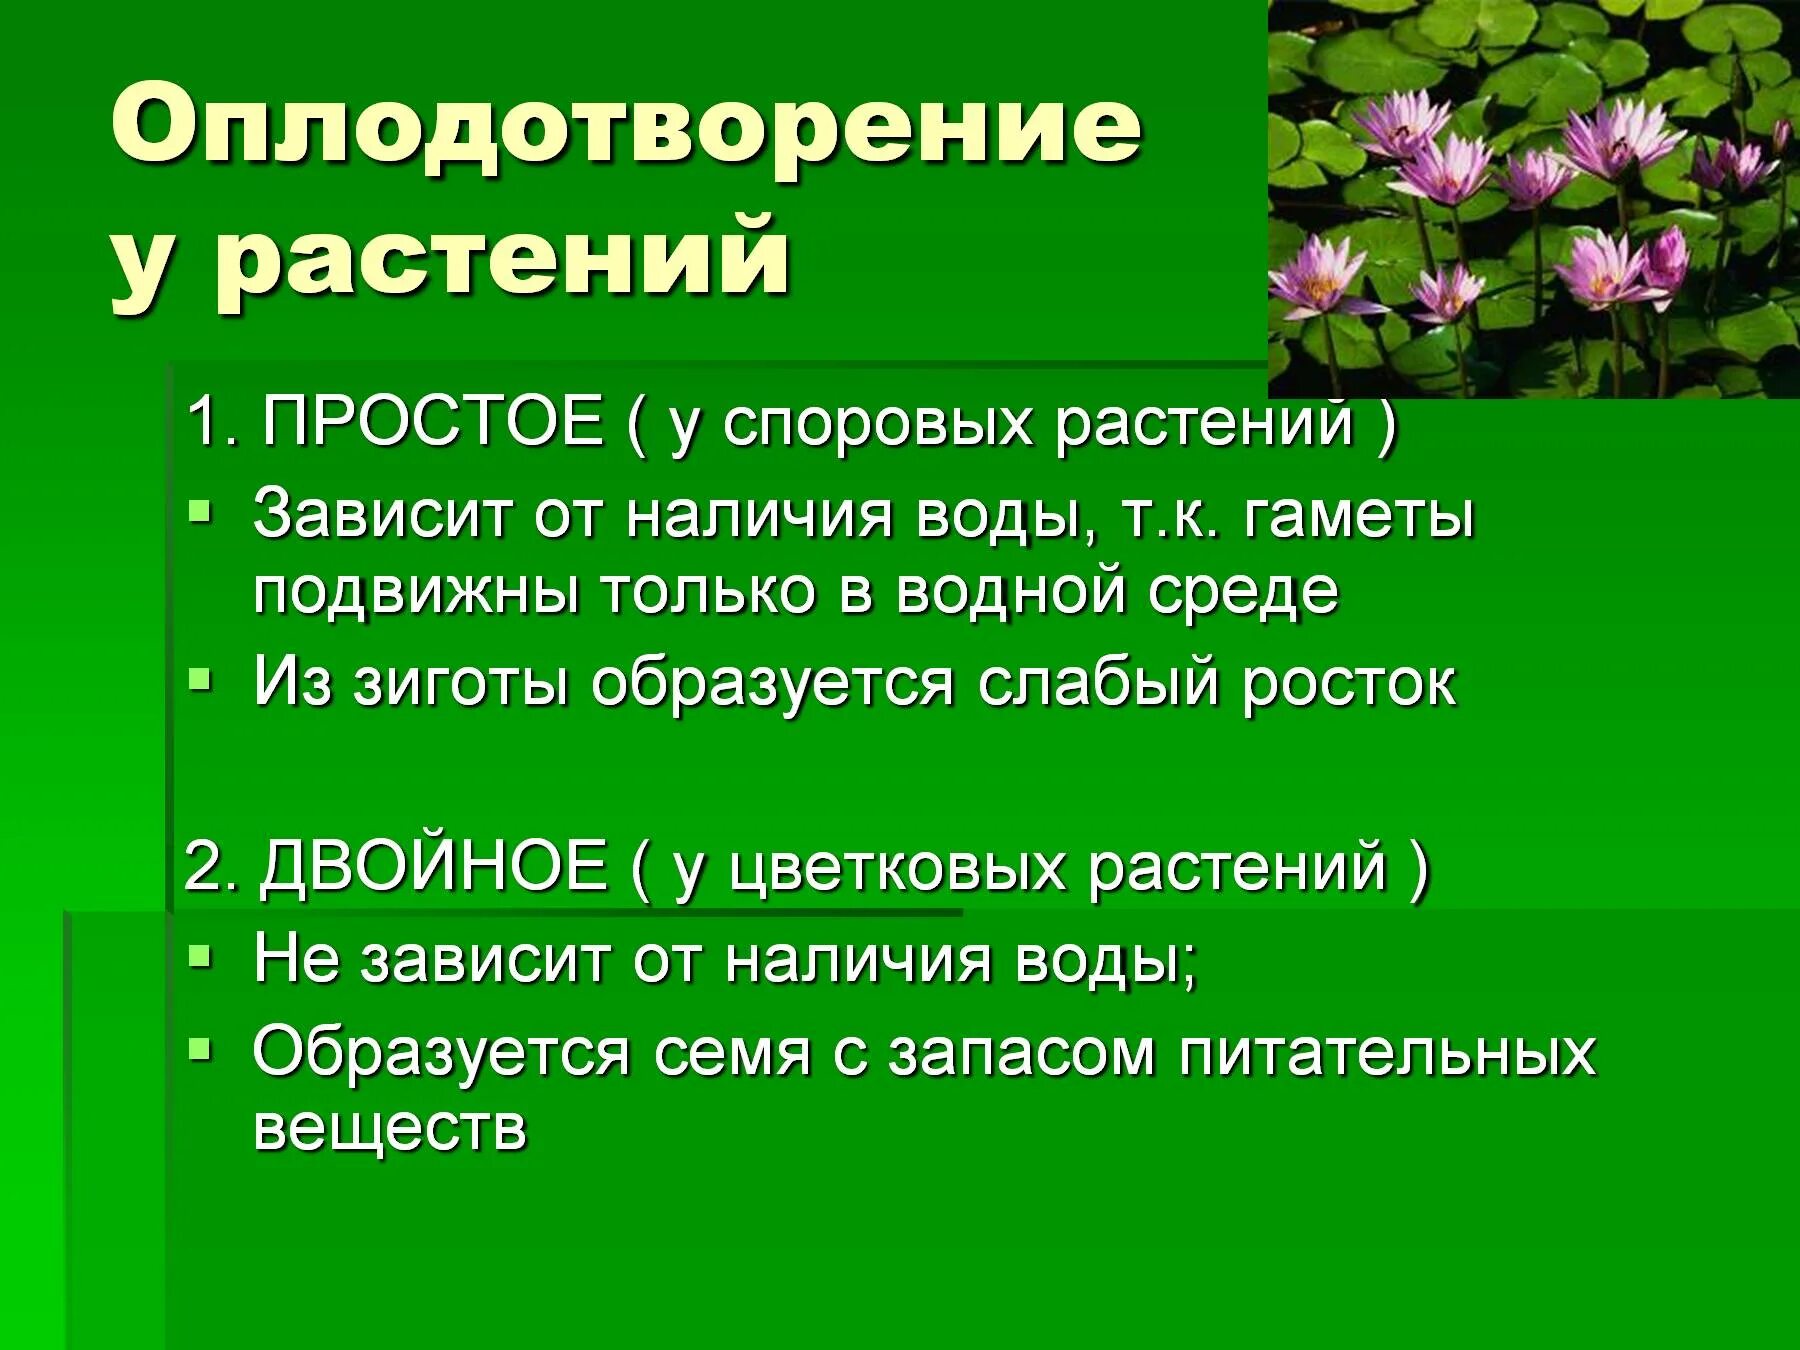 Особенности оплодотворения у растений. Цветковые растения особенности оплодотворения. Оплодотворение у цветковых растений кратко. Простое оплодотворение у растений.